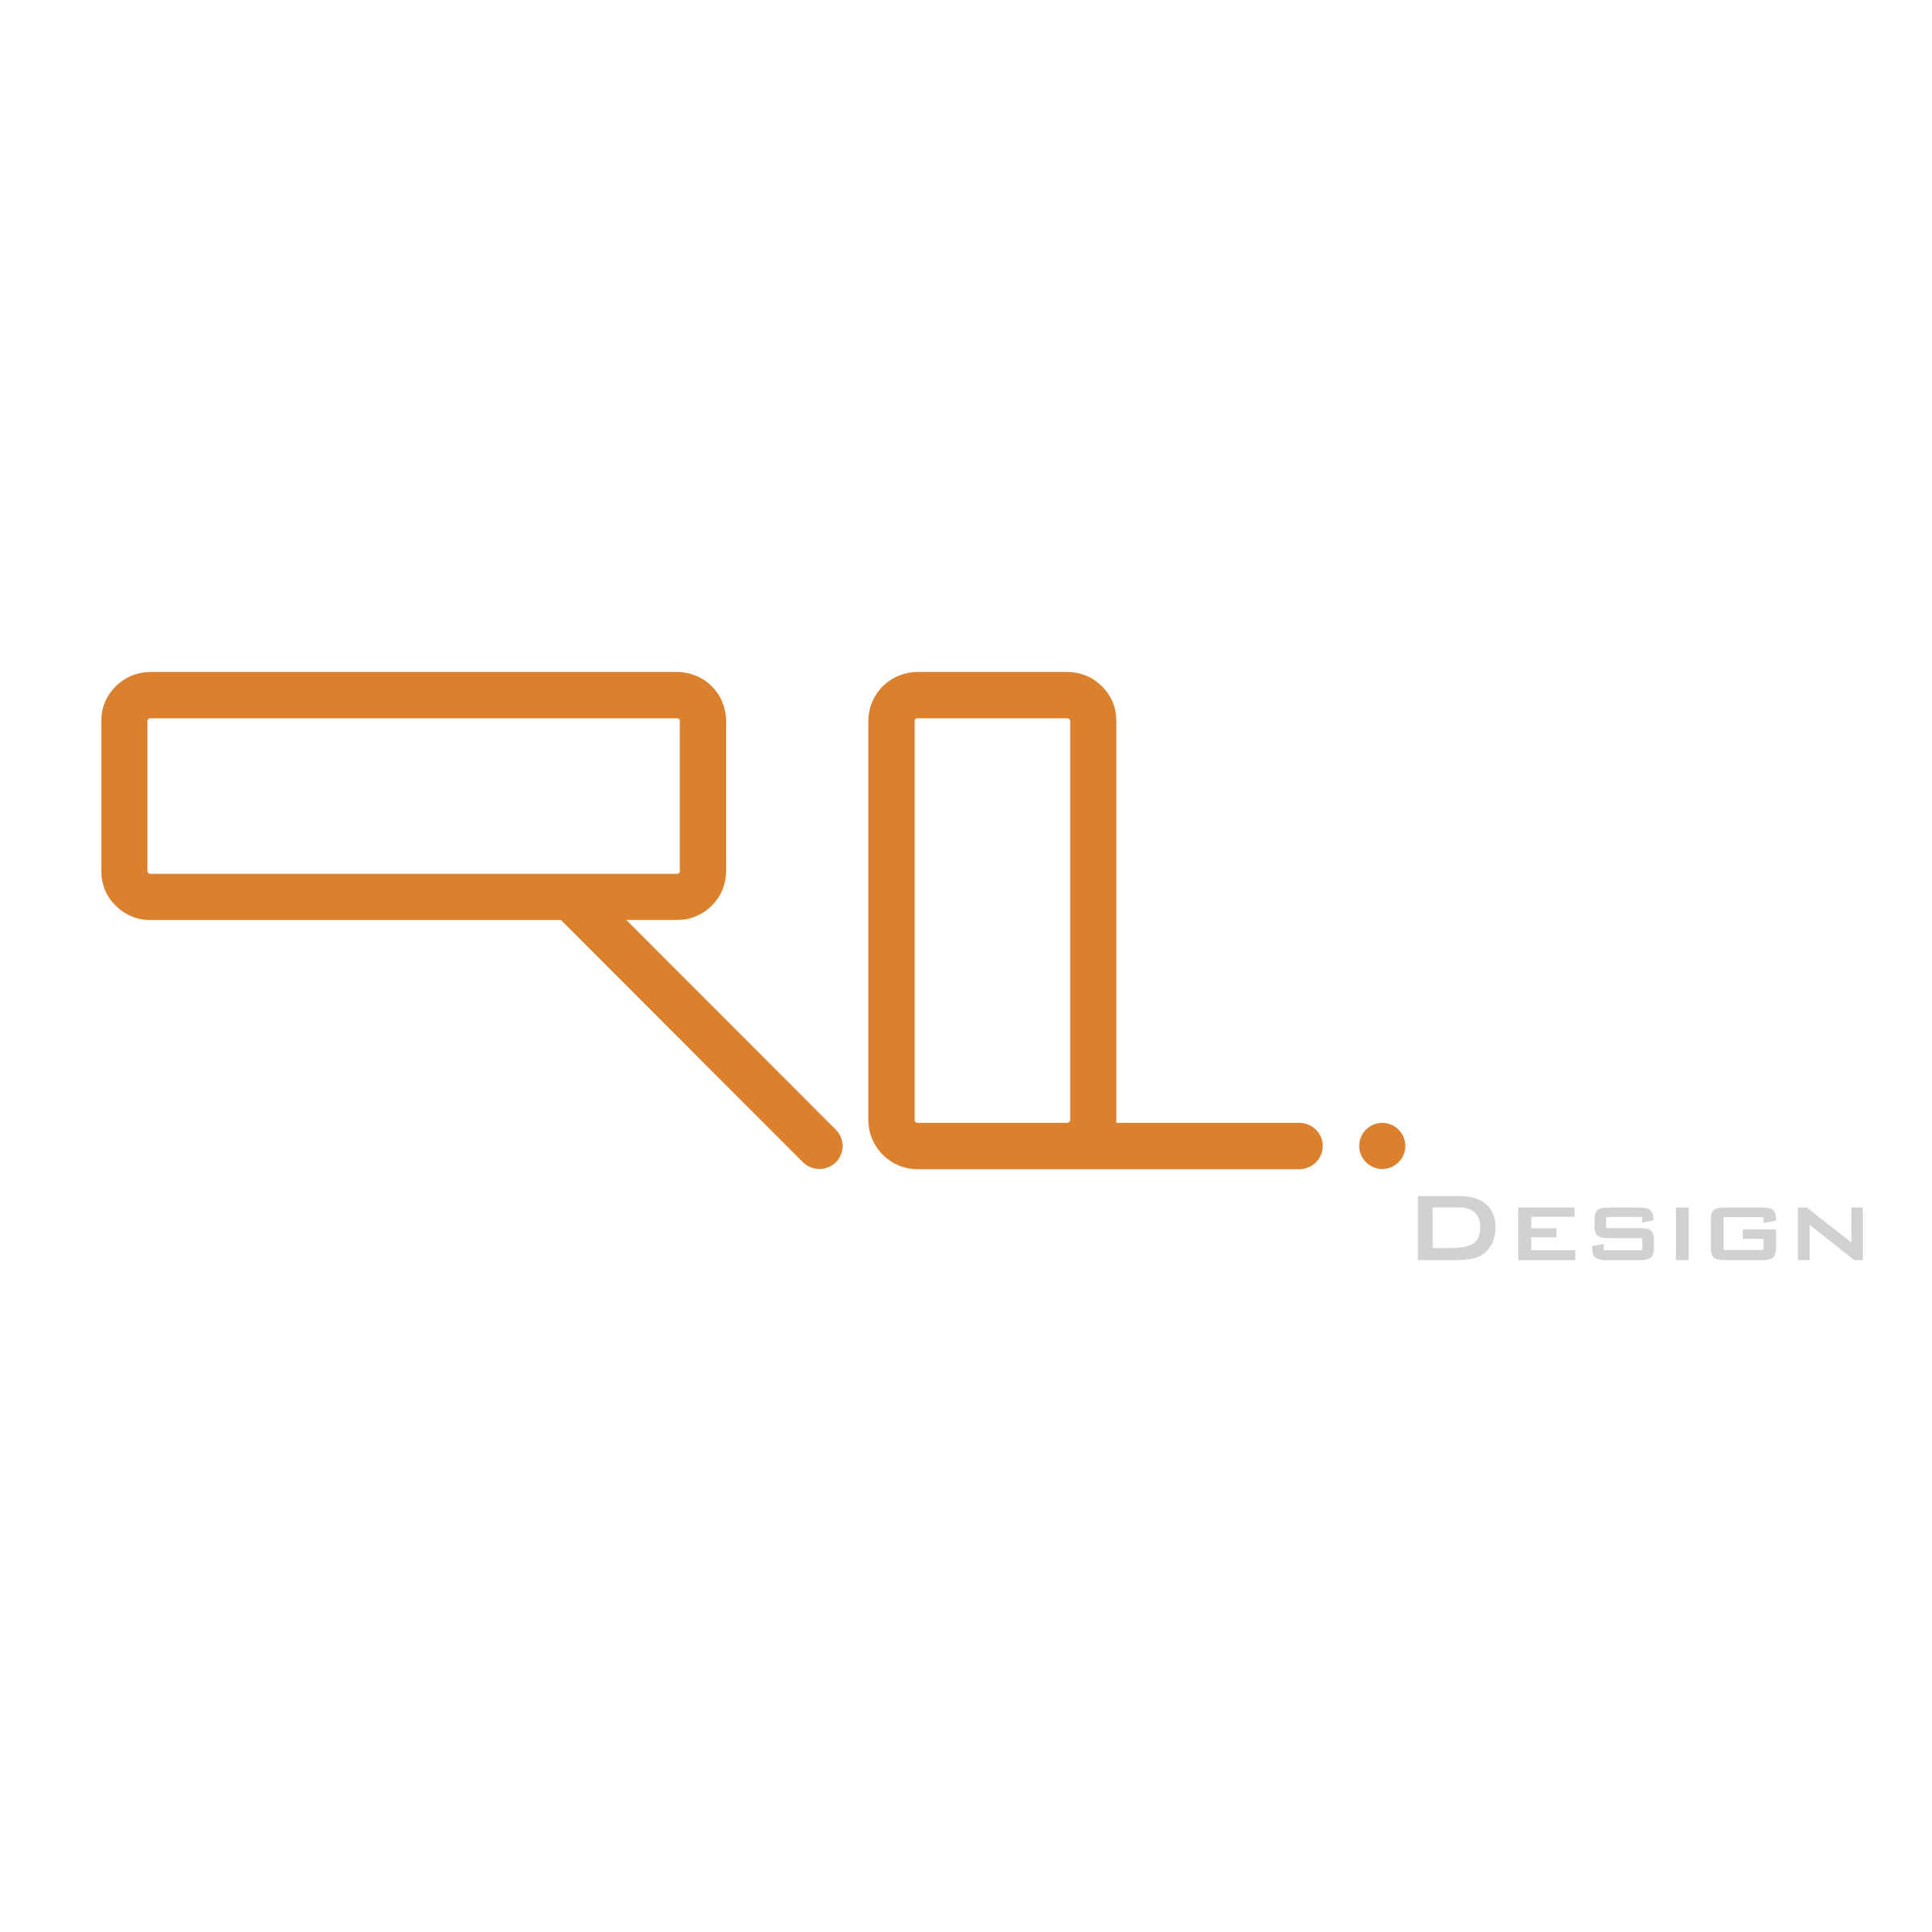 RL Logo - RL DESIGN Logo PNG Transparent & SVG Vector - Freebie Supply